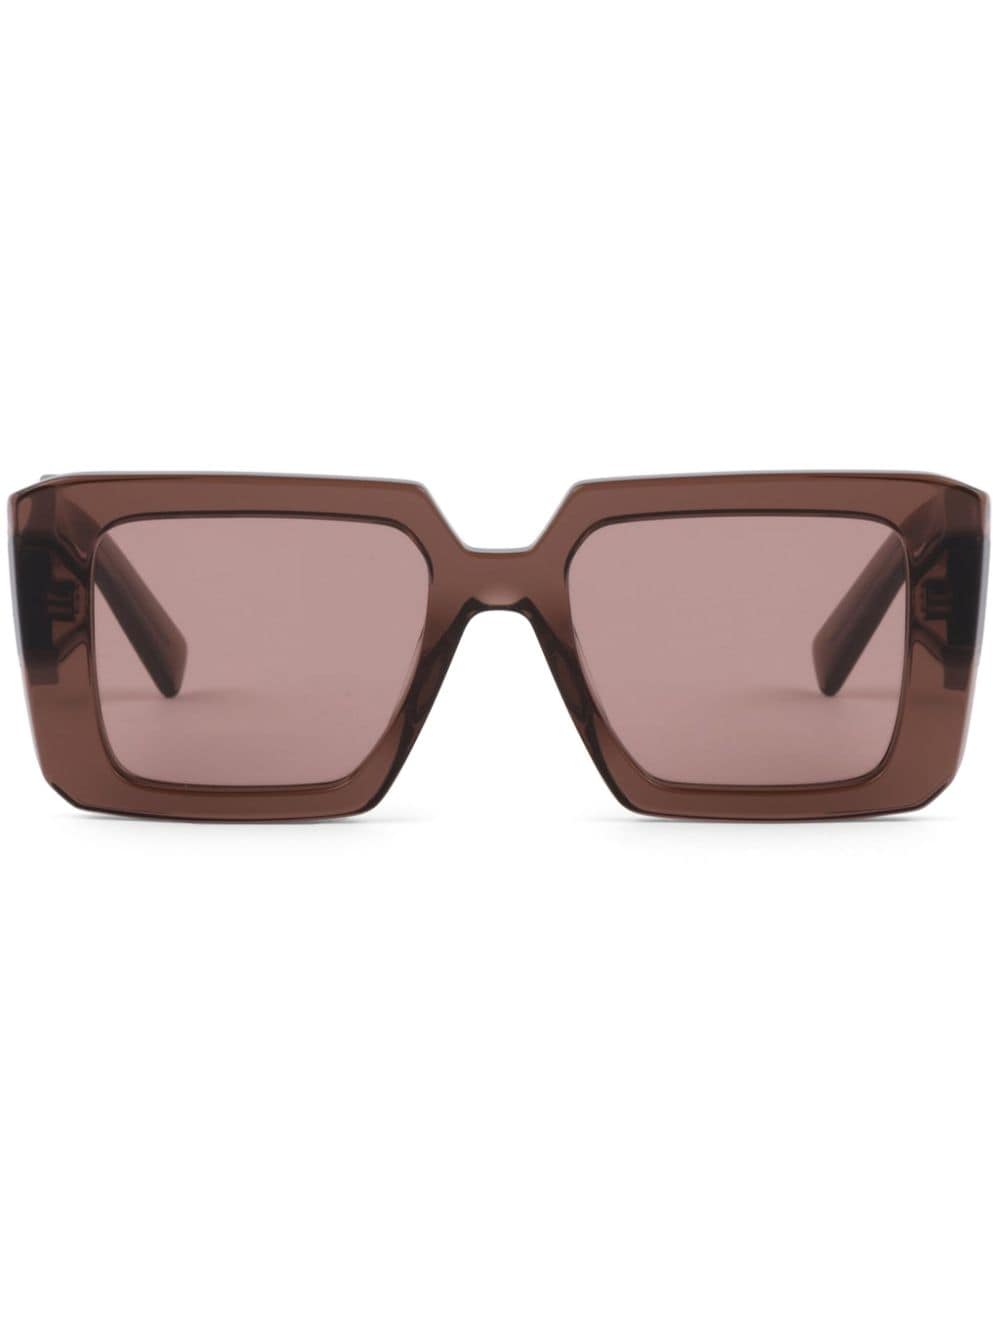 Prada Square Frame Sunglasses Sunglasses In 17o60b Brown Transparent